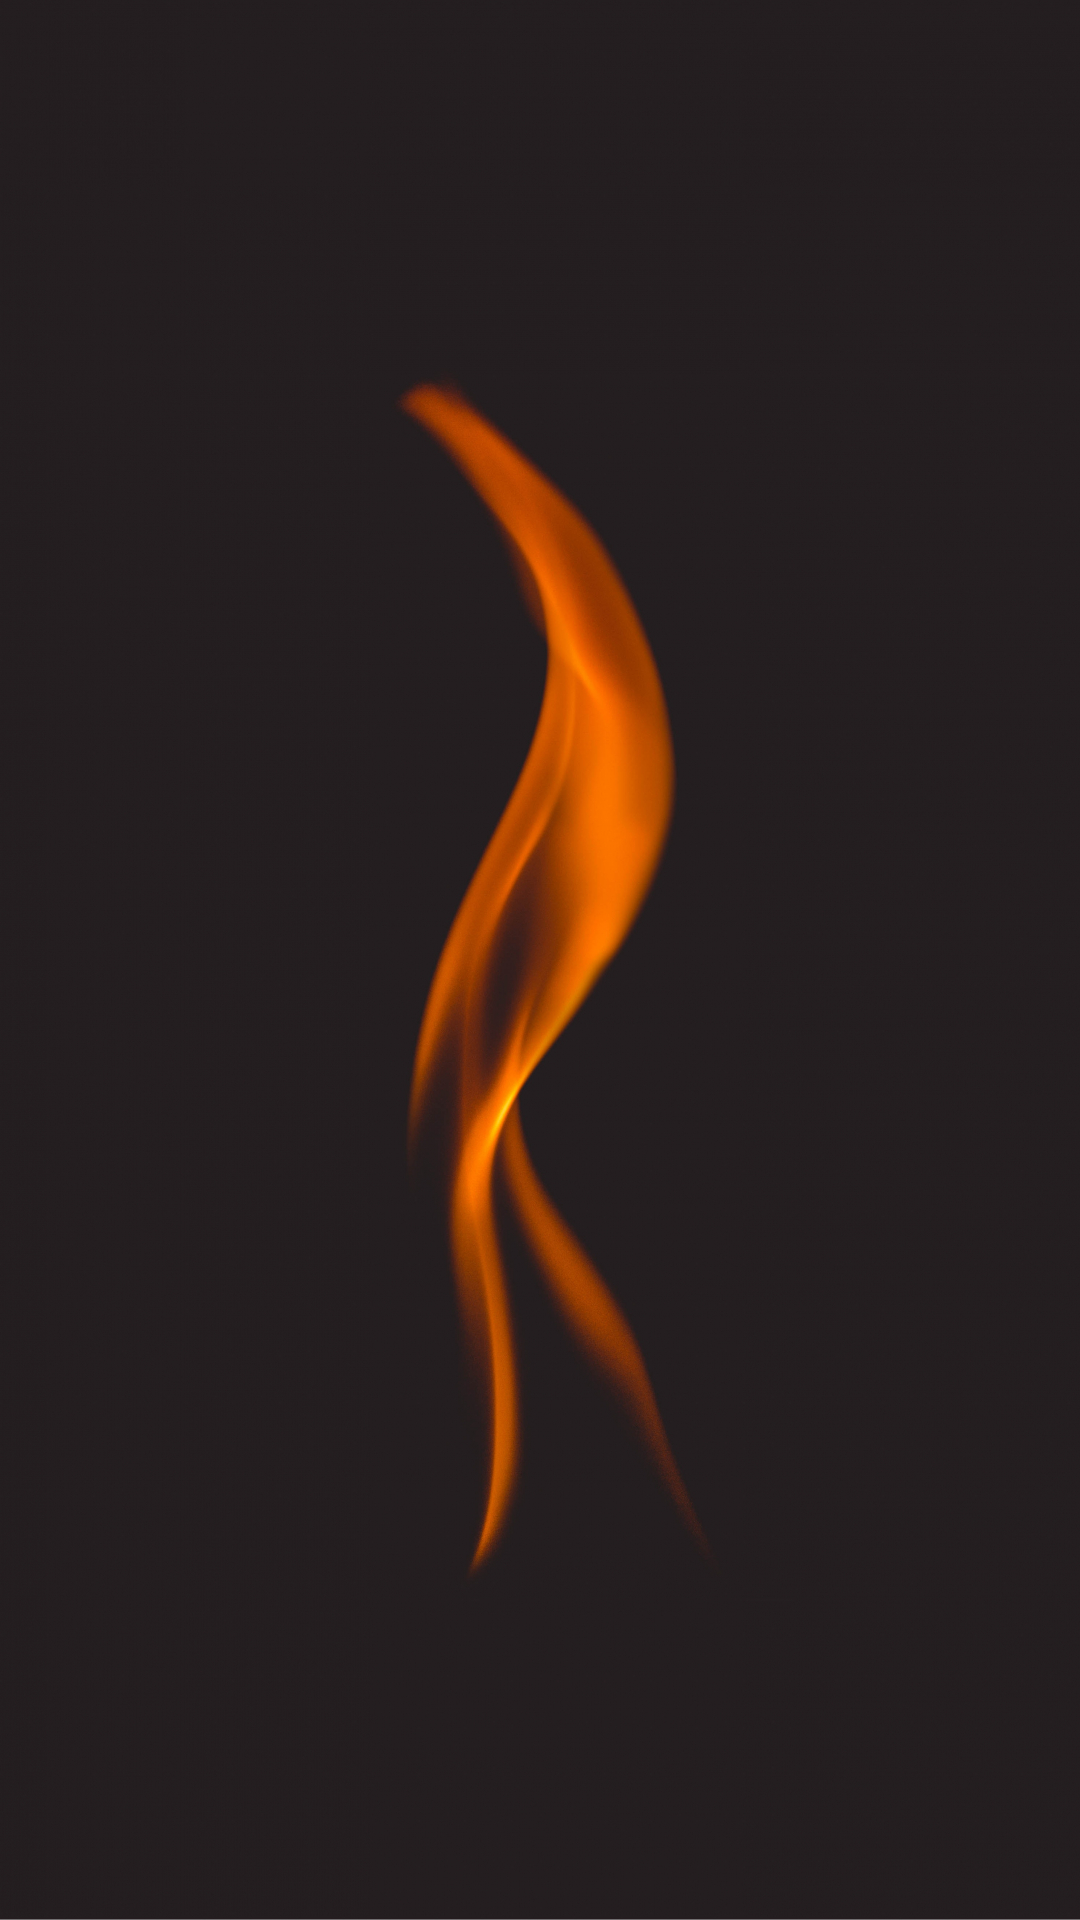 Fiery Silhouette iPhone Wallpaper